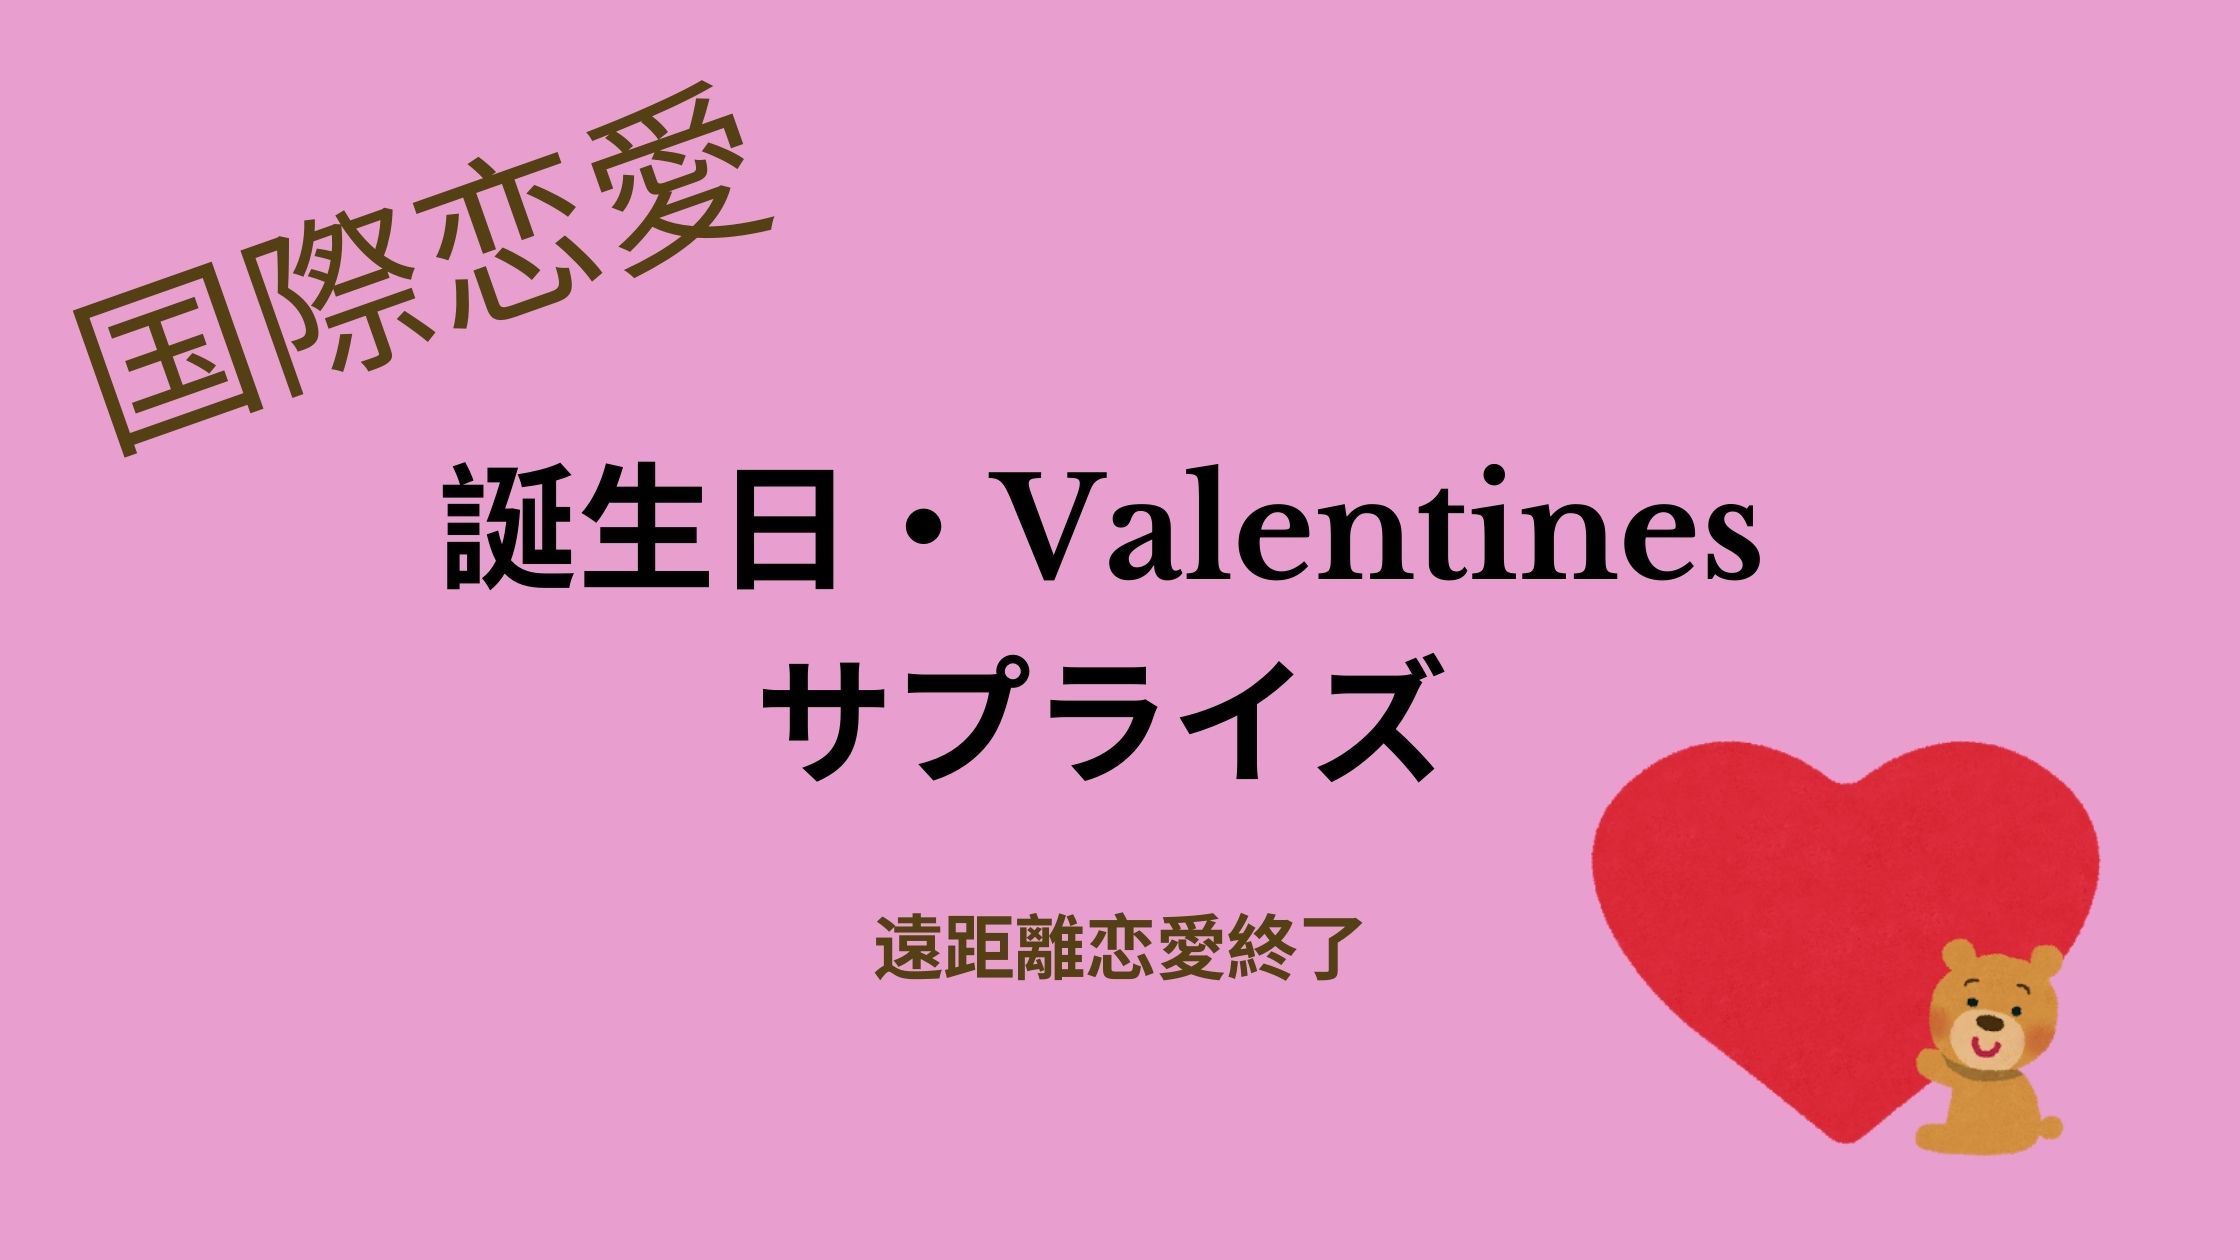 国際恋愛 彼氏がサプライズプレゼントしてくれた誕生日 バレンタイン祝い 日本人医師の海外生活日記